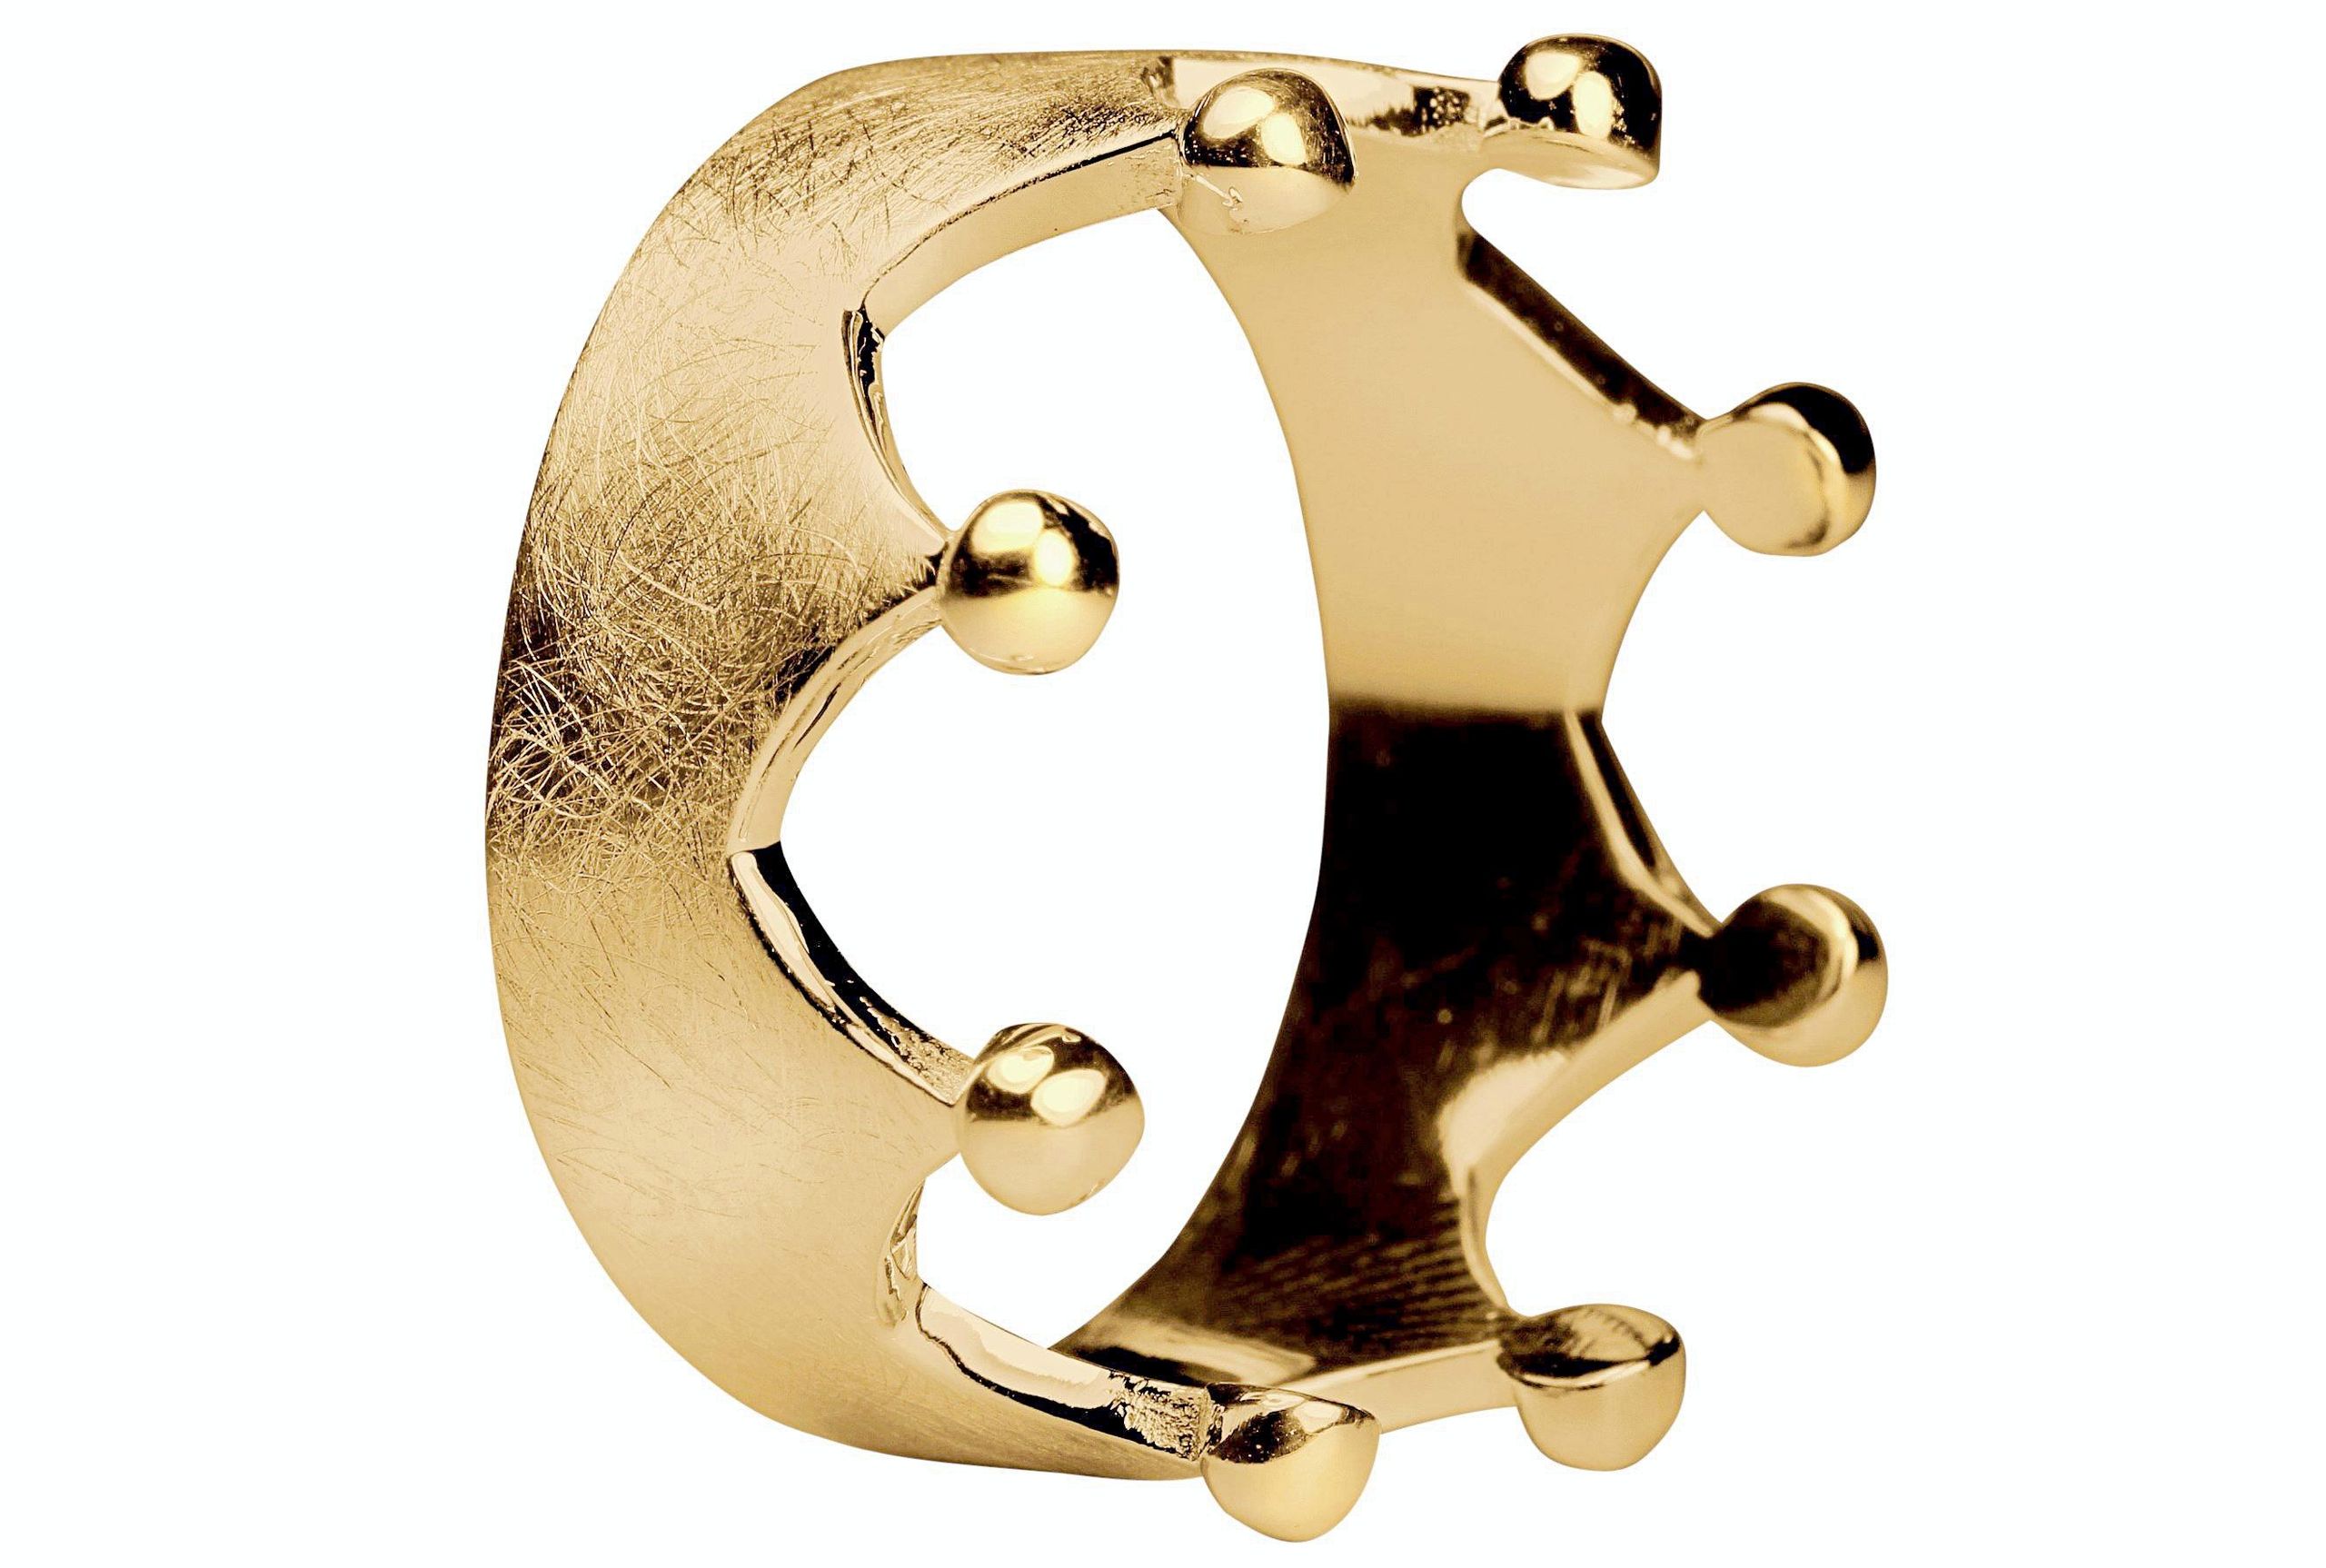 Ein Kronenring in den Größen 64 bis 70 mit acht Zacken und acht Kügelchen an der Spitze, gefertigt aus Silber und mit Gold plattiert.